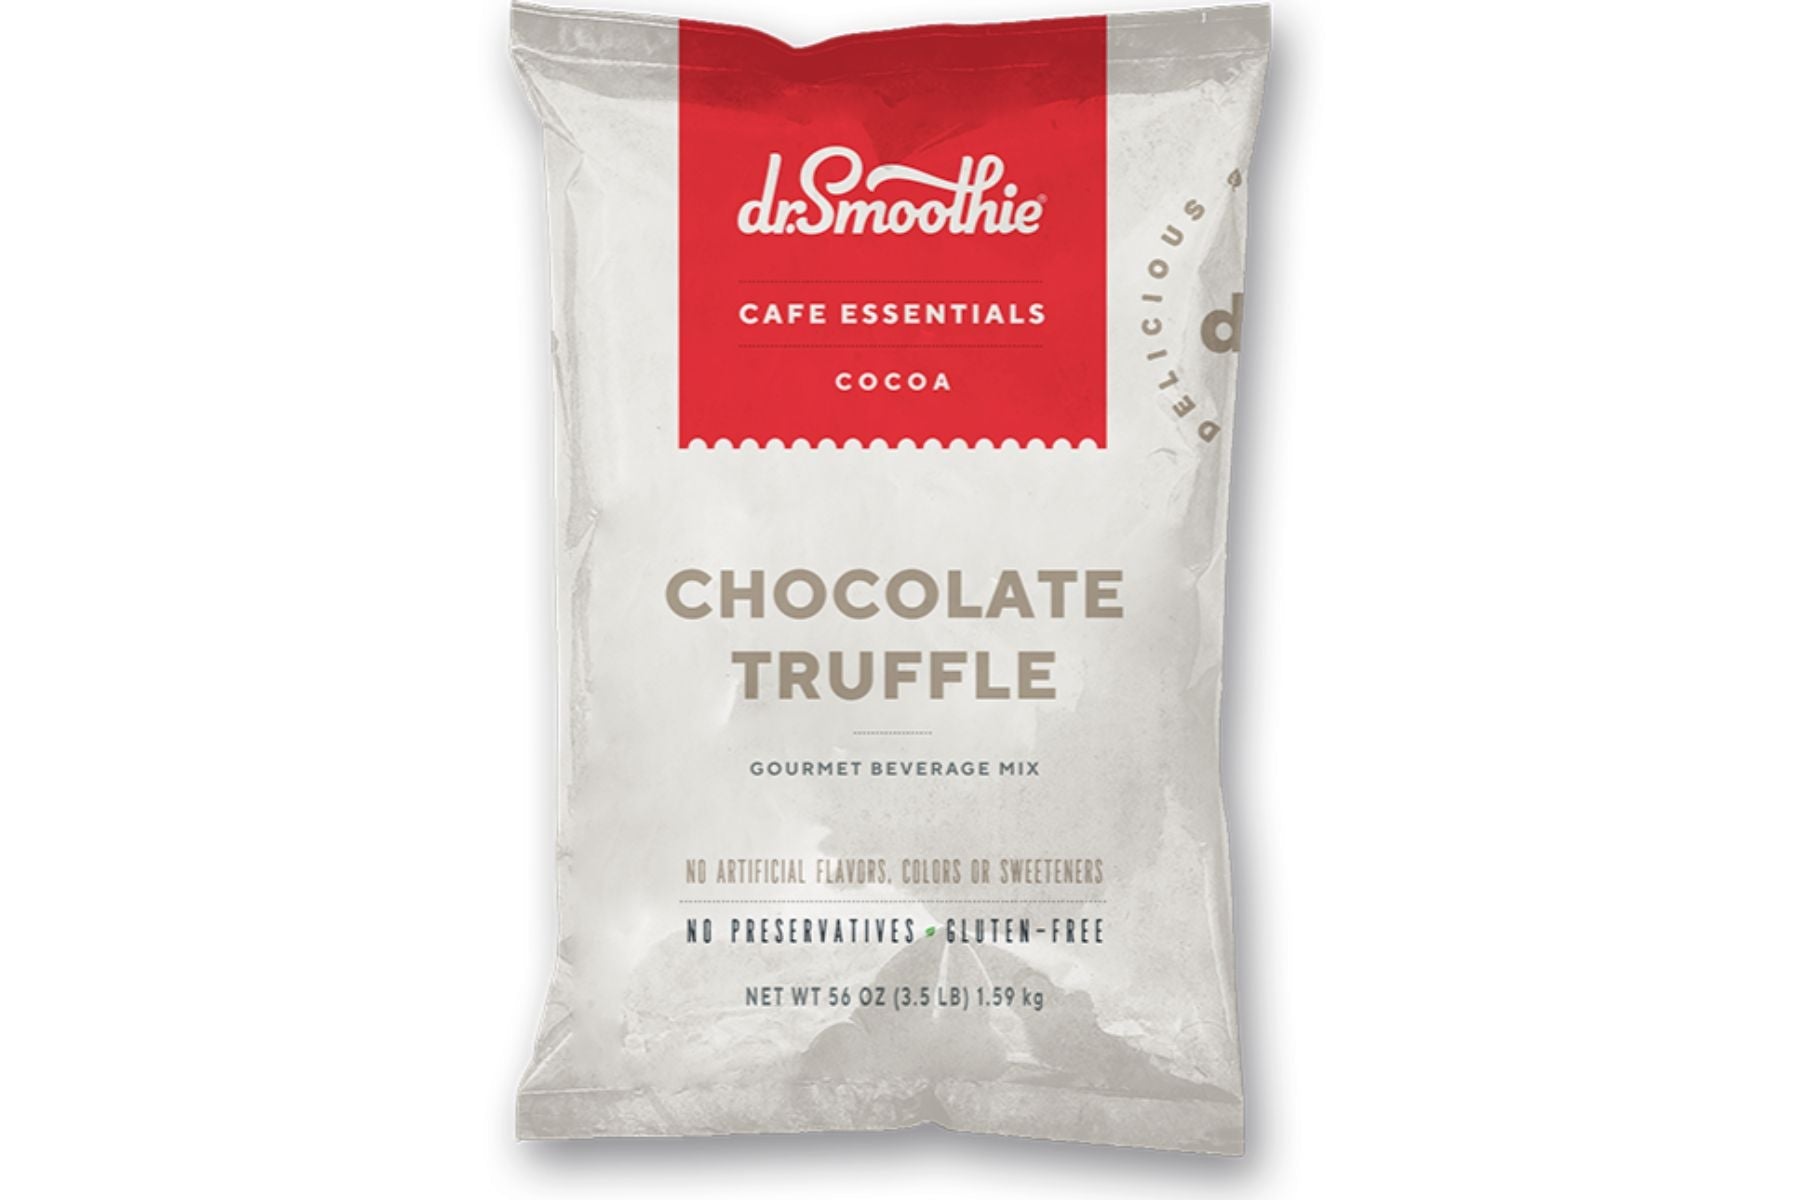 Dr. Smoothie Cafe Essentials Cocoa - 3.5lb Bulk Bag: Chocolate Truffle